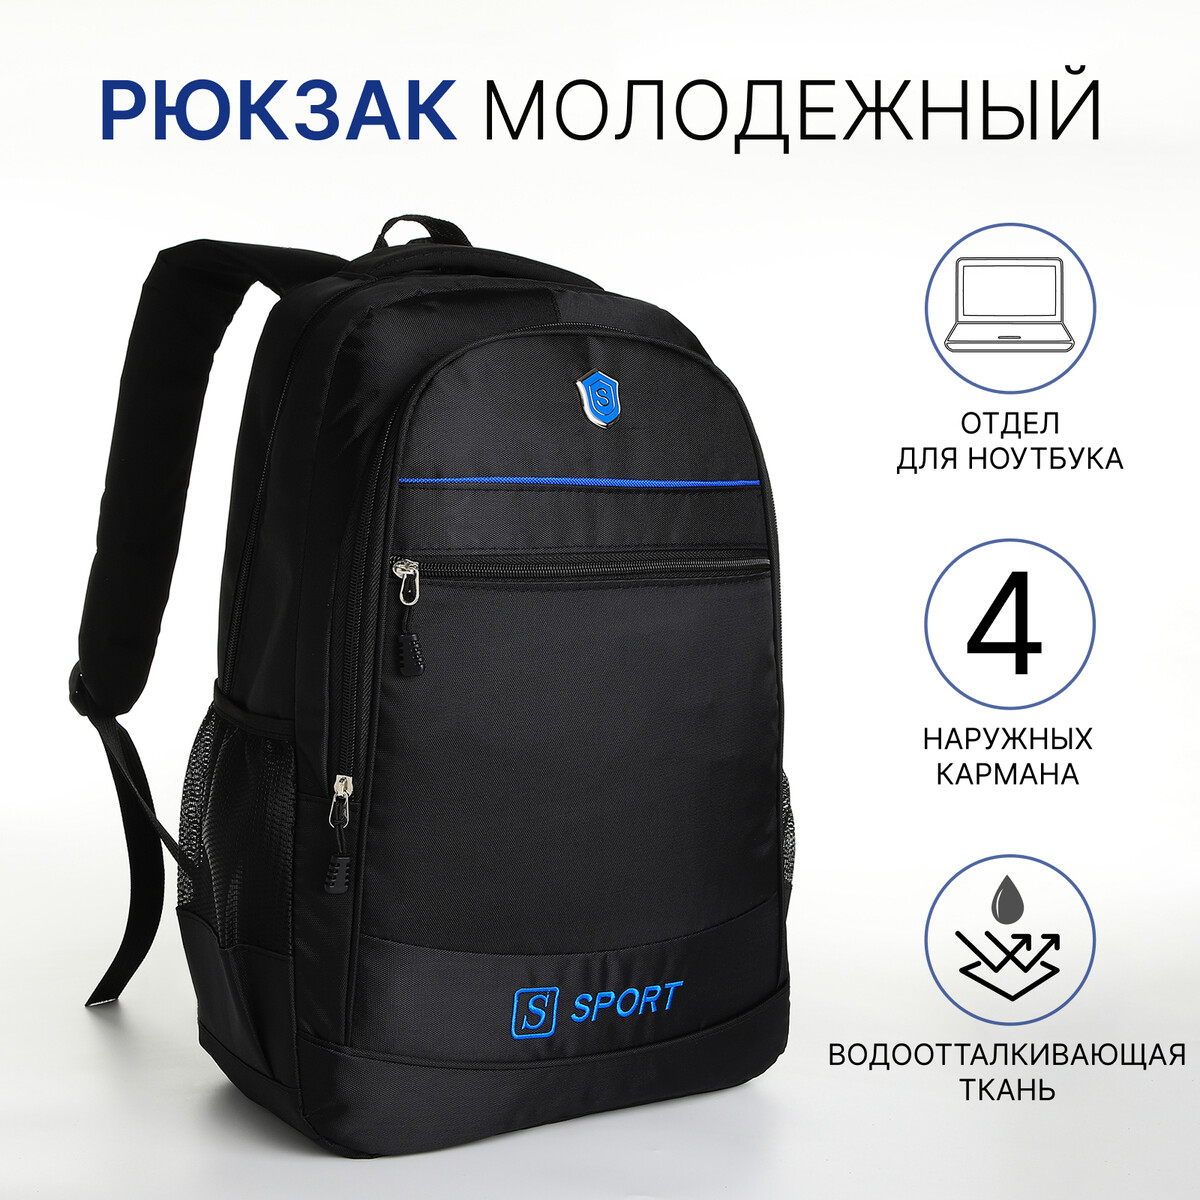 Рюкзак молодежный из текстиля на молнии, 4 карманов, цвет черный/синий рюкзак туристический на молнии 5 наружных карманов синий